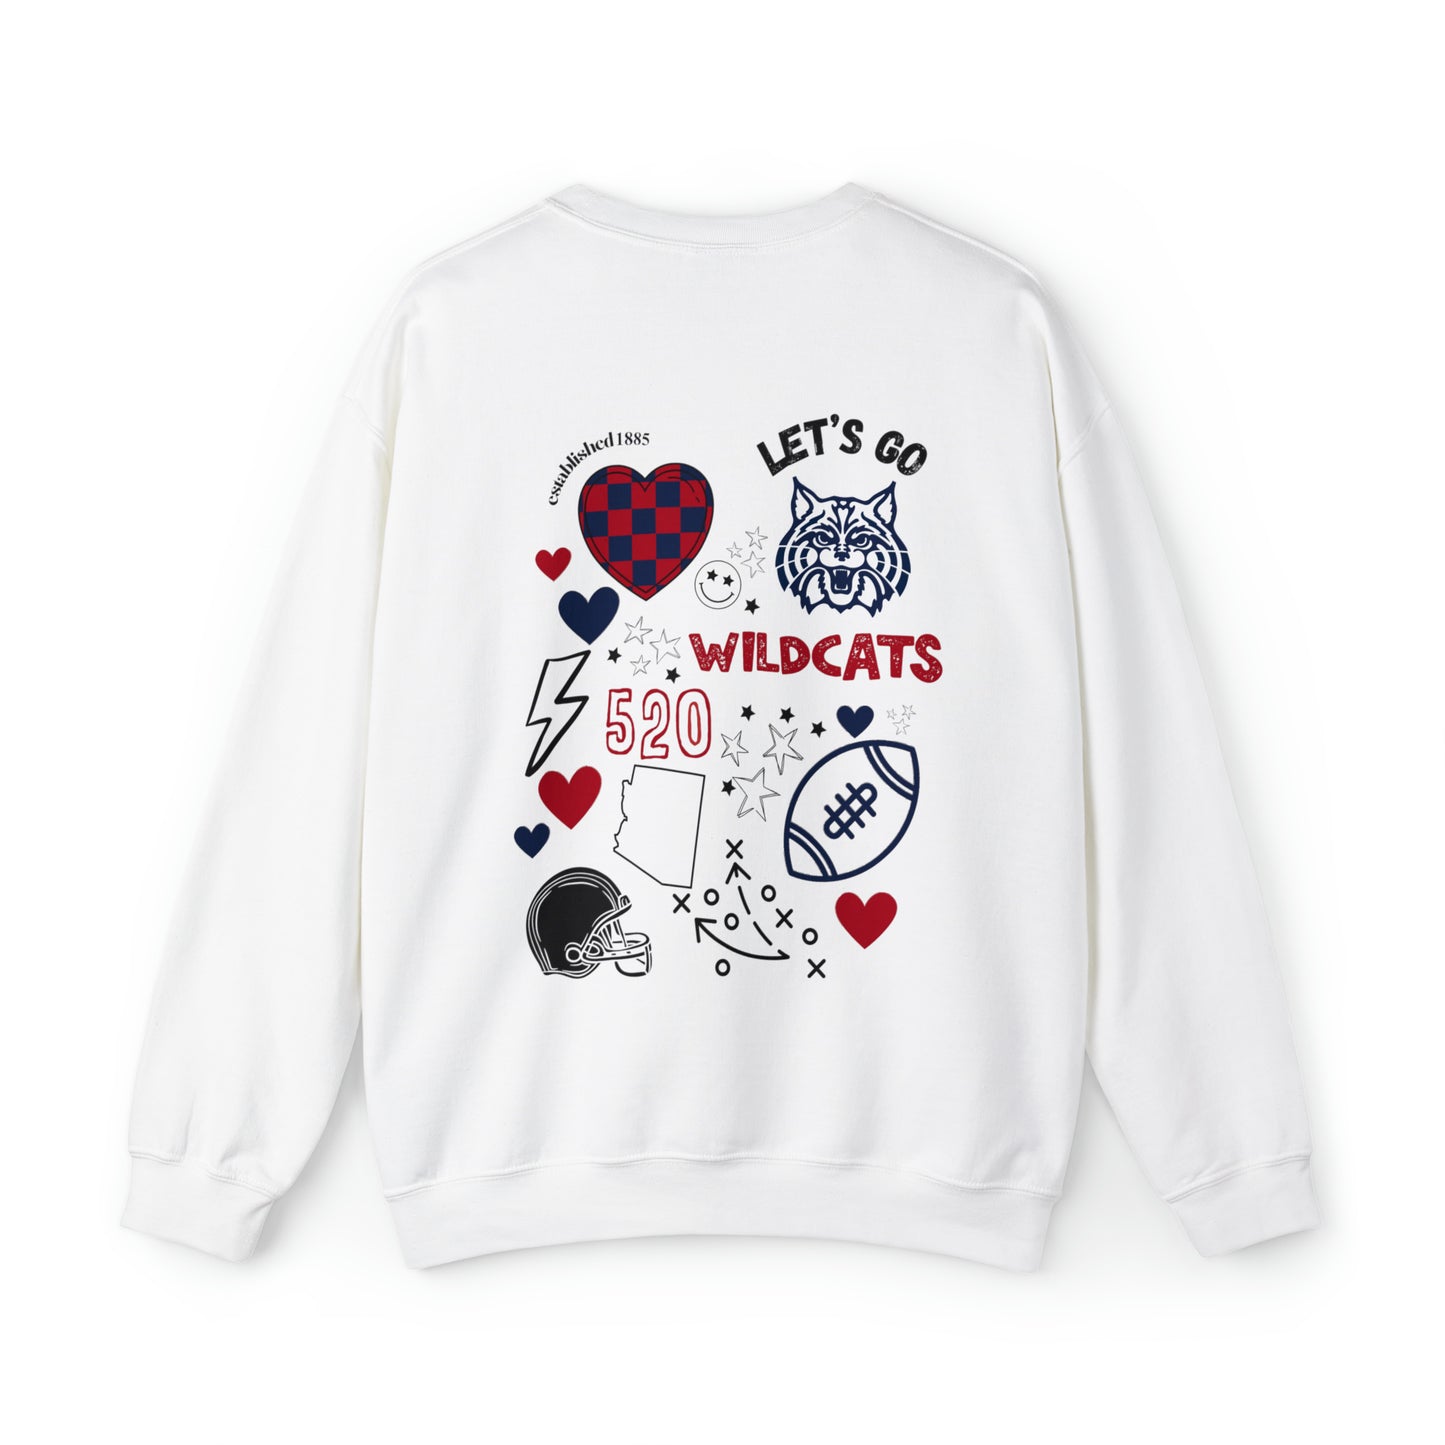 Wildcats Game Day Sweatshirt